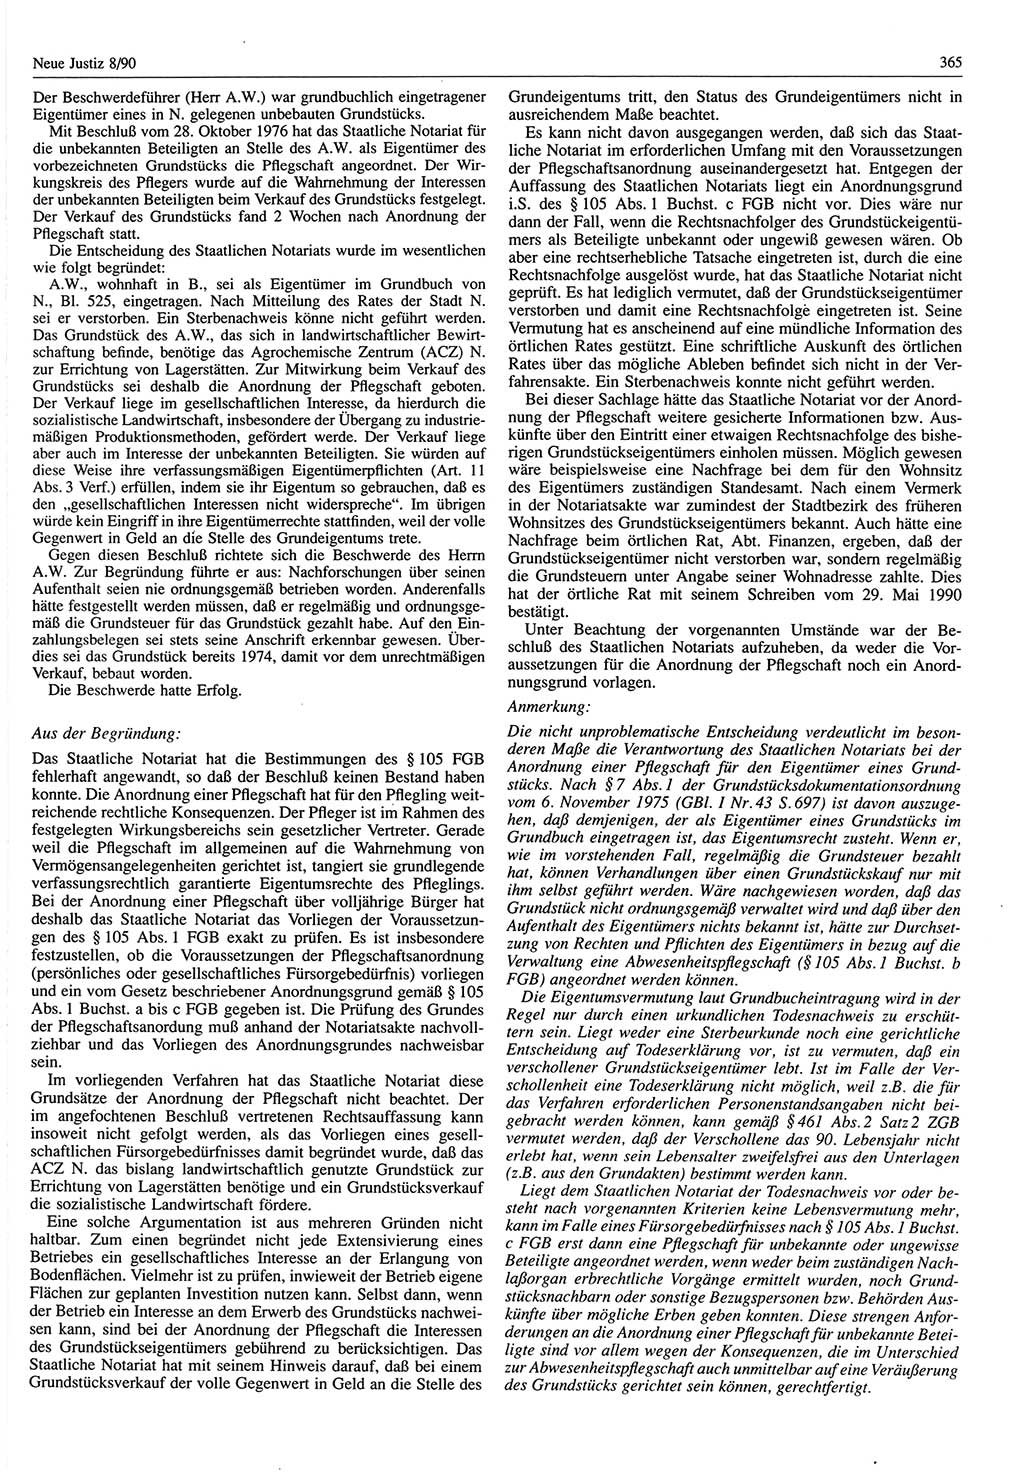 Neue Justiz (NJ), Zeitschrift für Rechtsetzung und Rechtsanwendung [Deutsche Demokratische Republik (DDR)], 44. Jahrgang 1990, Seite 365 (NJ DDR 1990, S. 365)